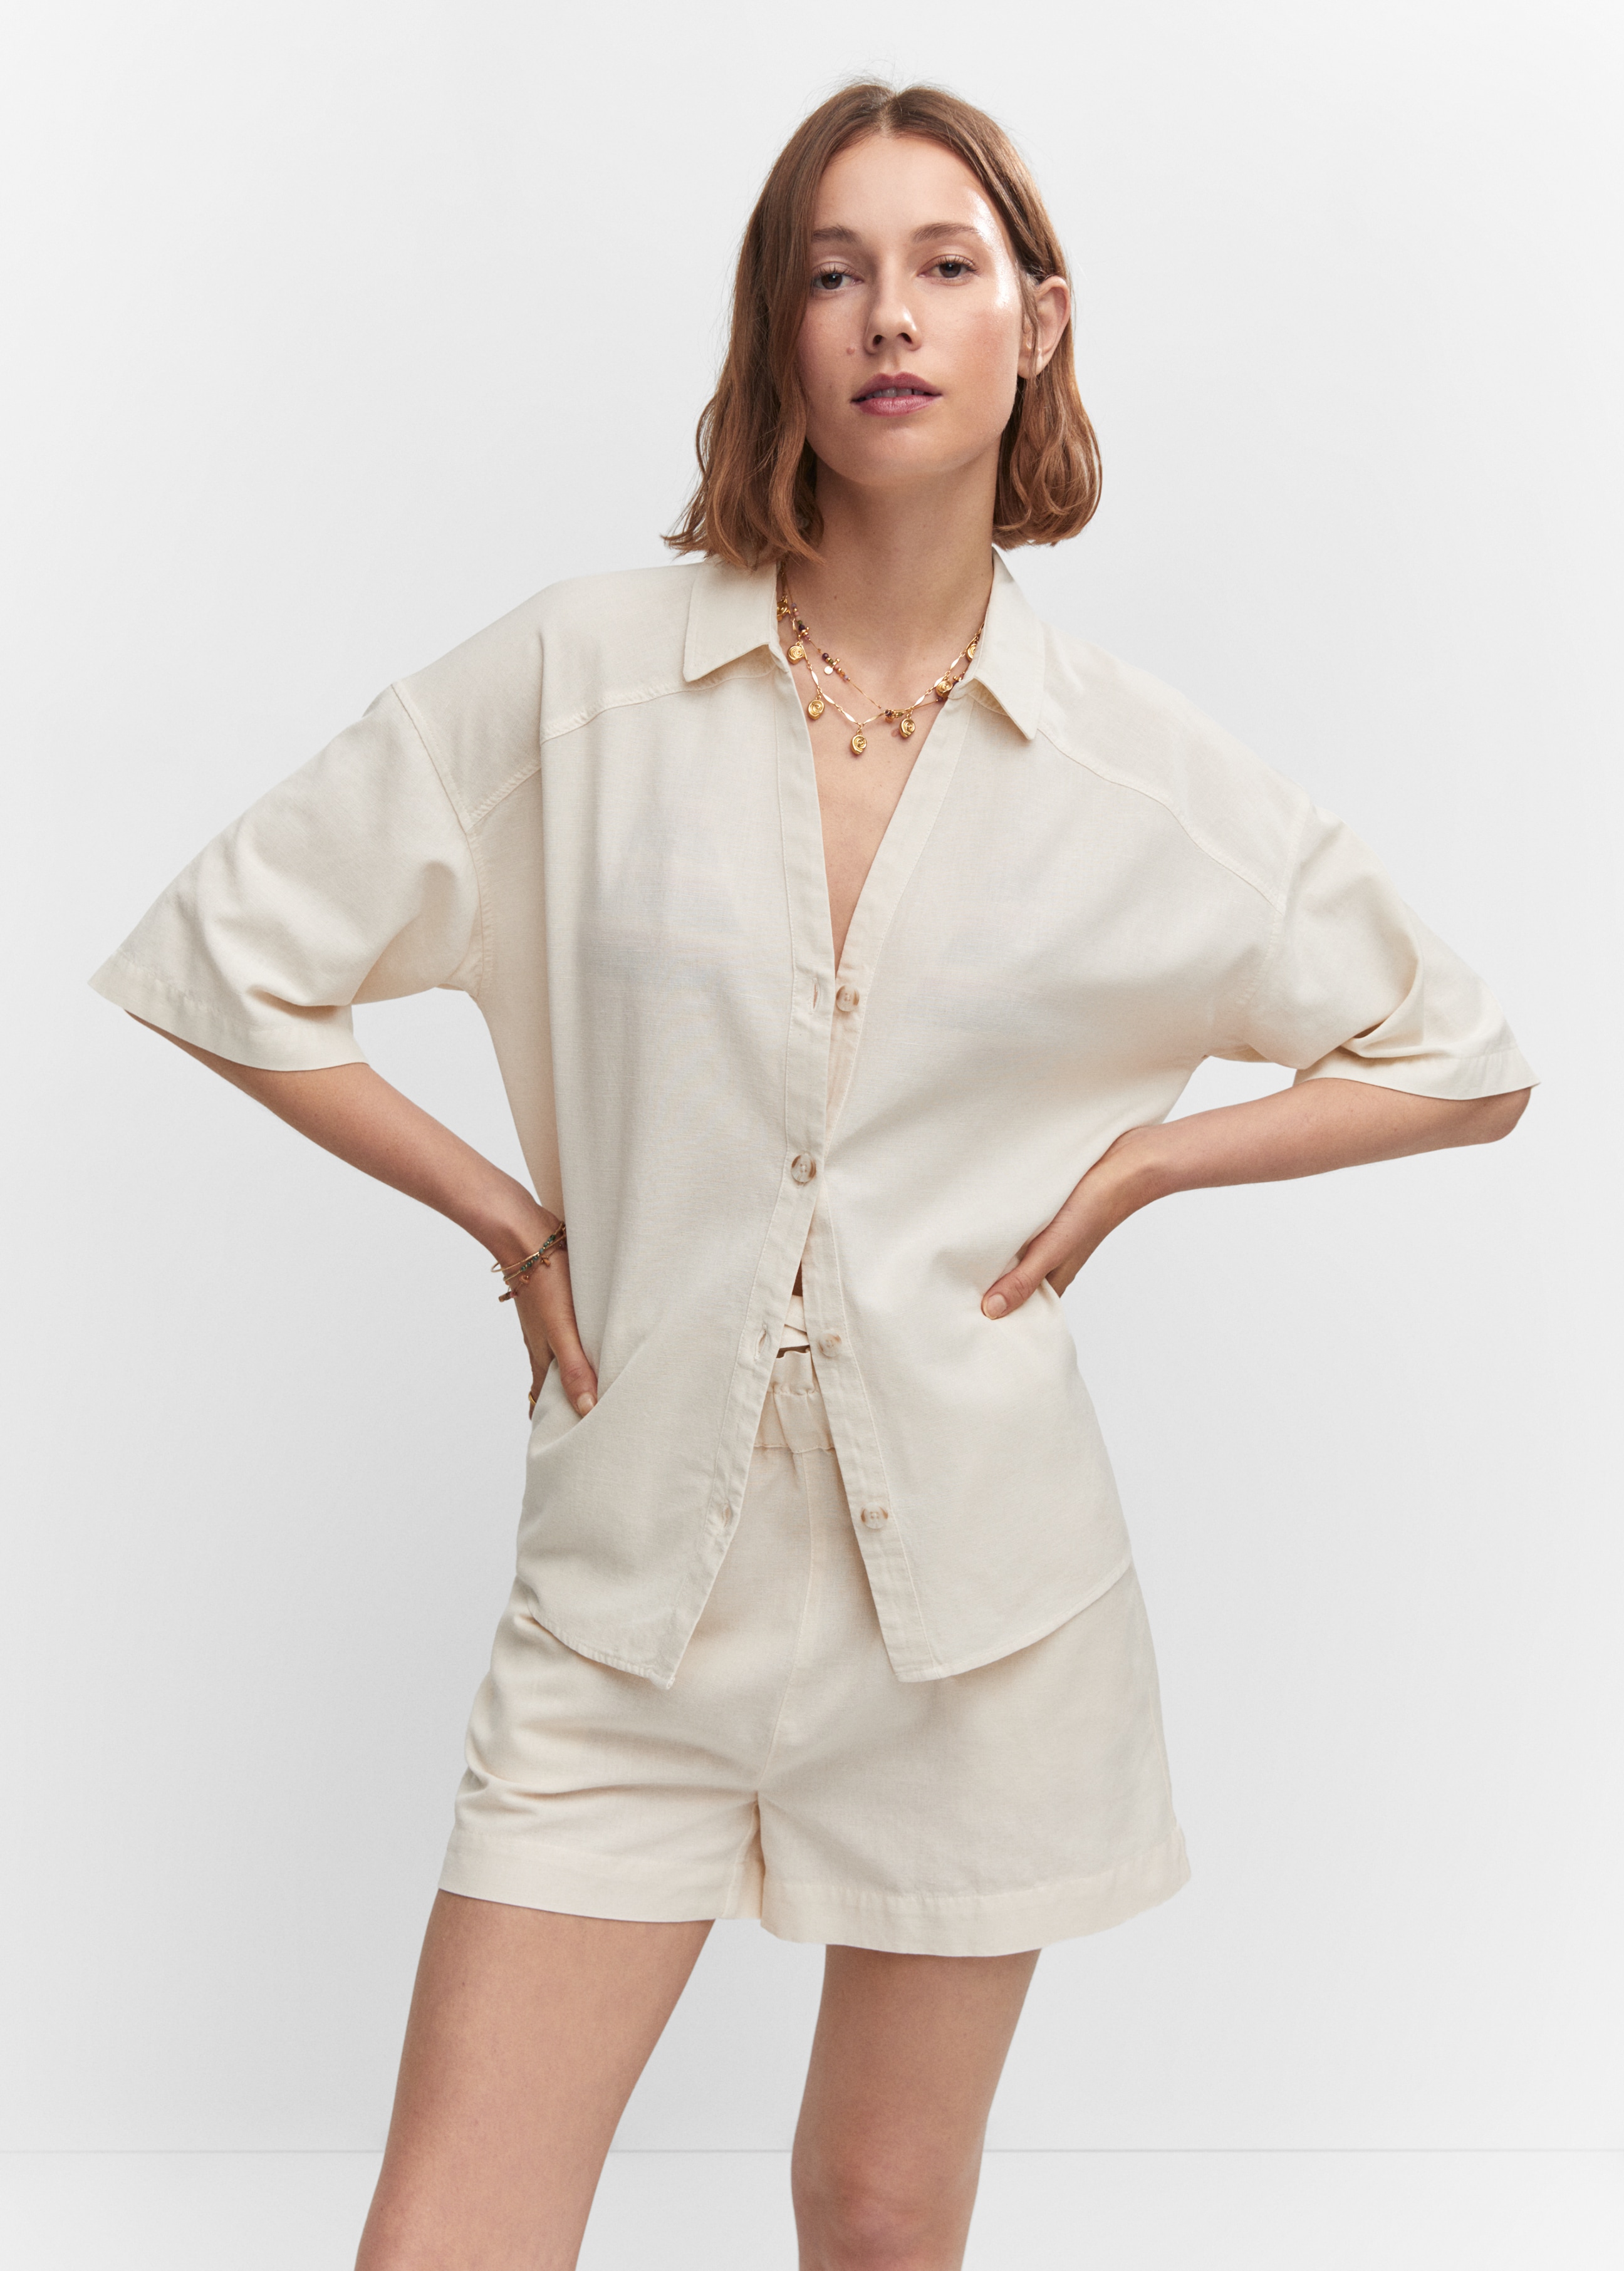 Camisa algodón lino - Plano medio